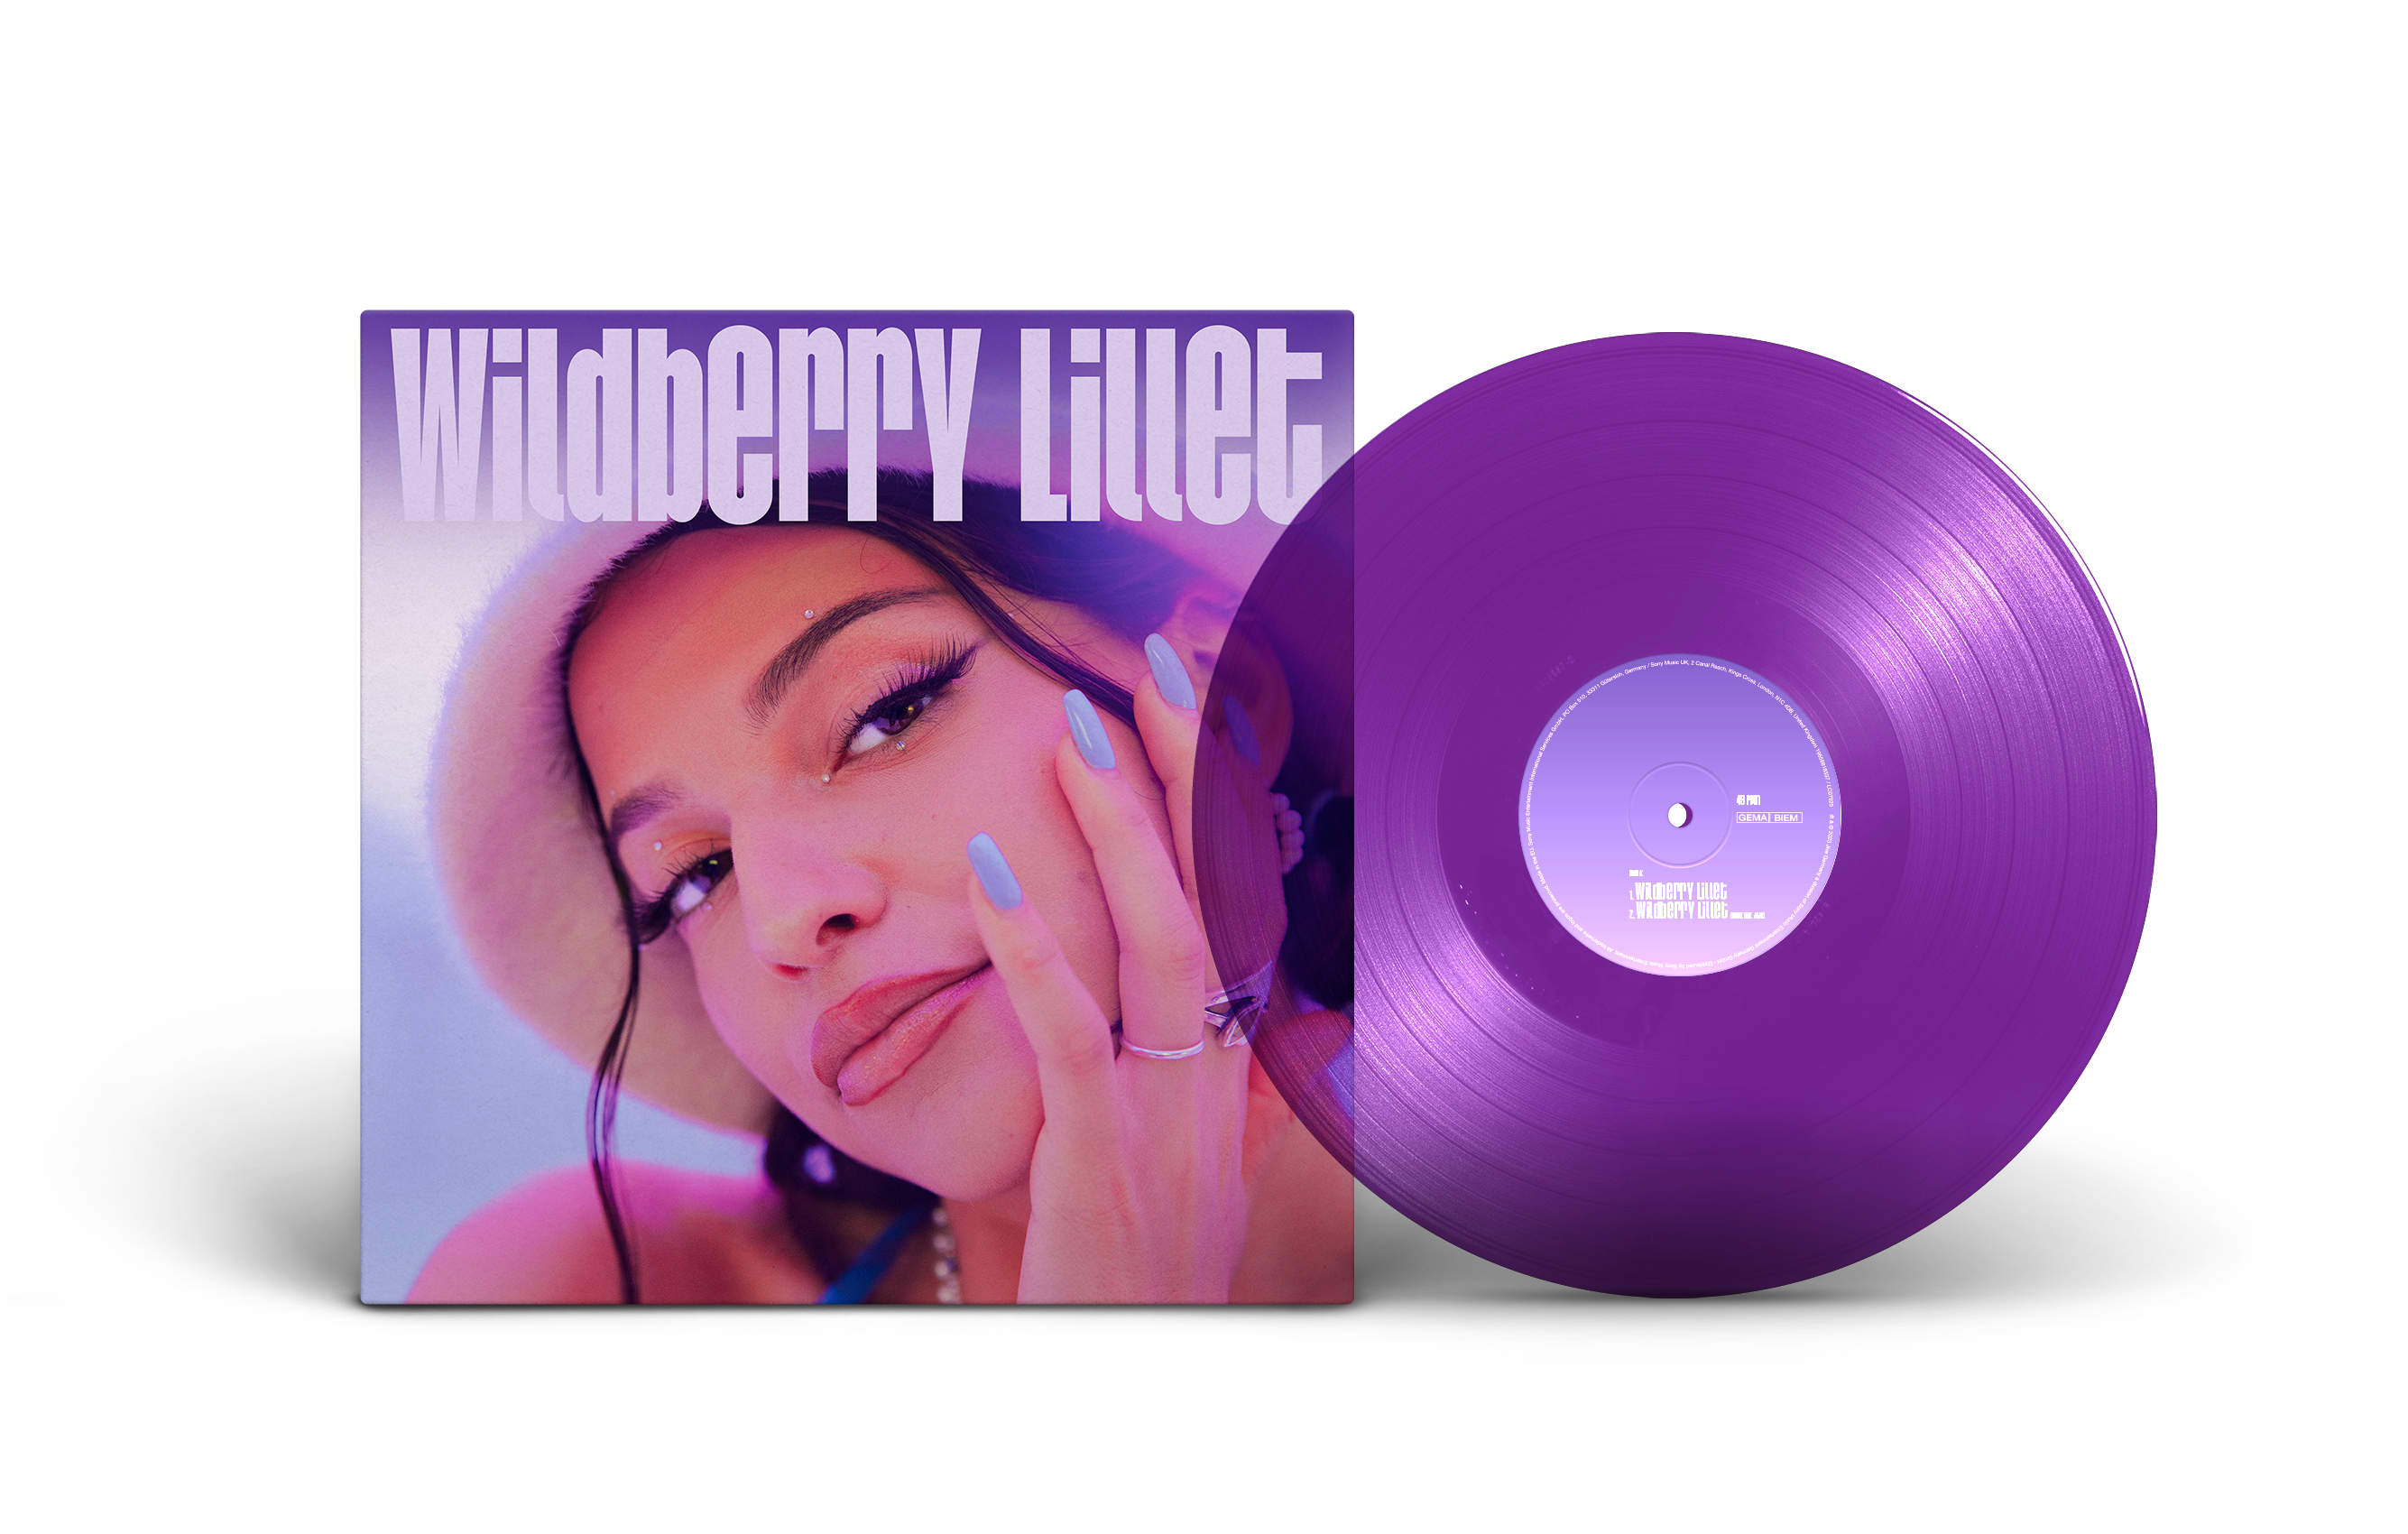 Nina Chuba - Wildberry Lillet Remix EP (7inch Vinyl Wildberry-transparent Ltd. Edition) + inklusive Zugang zu einem Gewinnspiel einer Demo Listening Session mit Nina Chuba